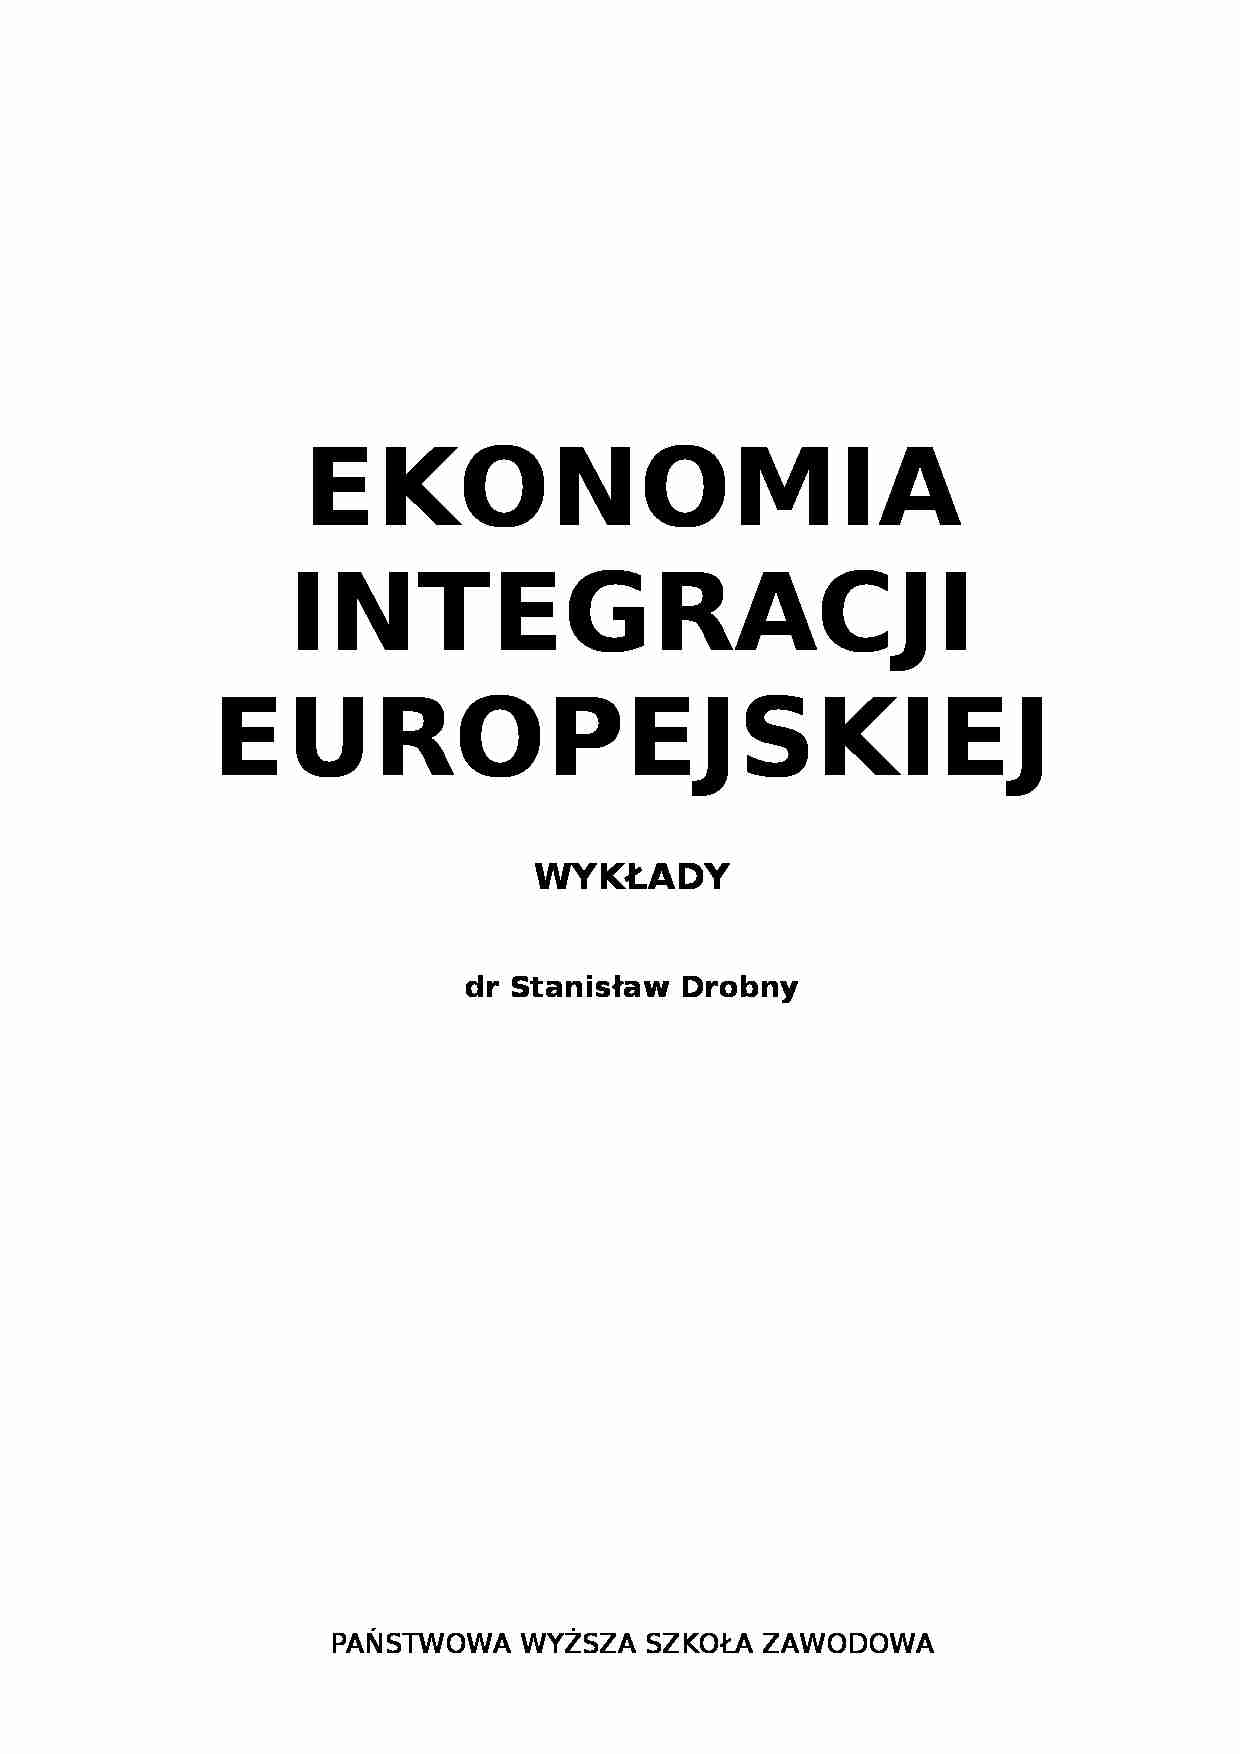 Ekonomia integracji europejskiej - wykłady - strona 1